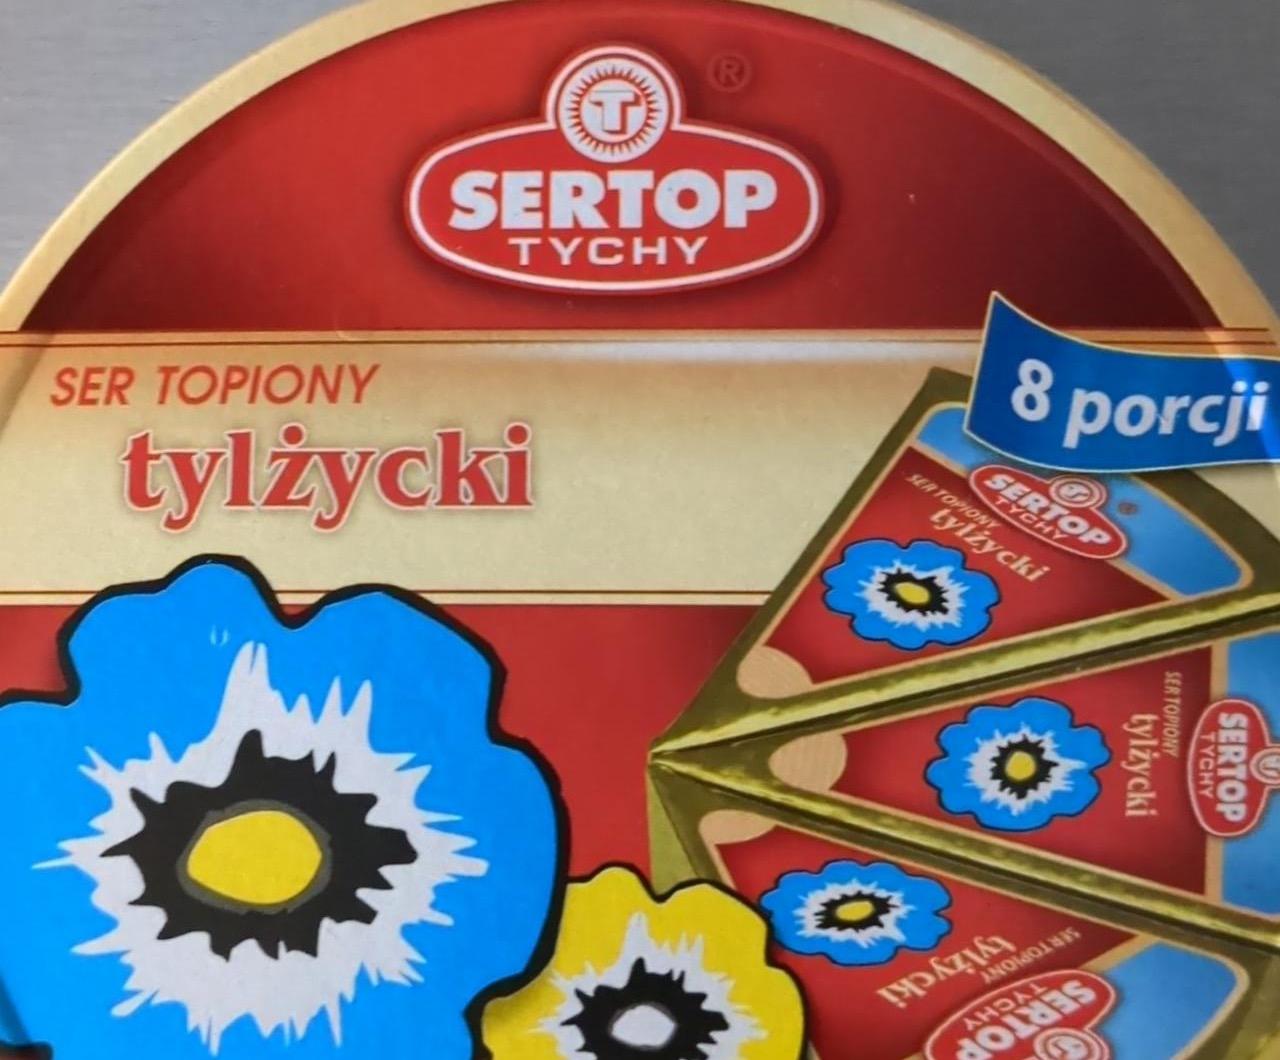 Zdjęcia - Sertop Tychy Ser topiony tylżycki 100 g